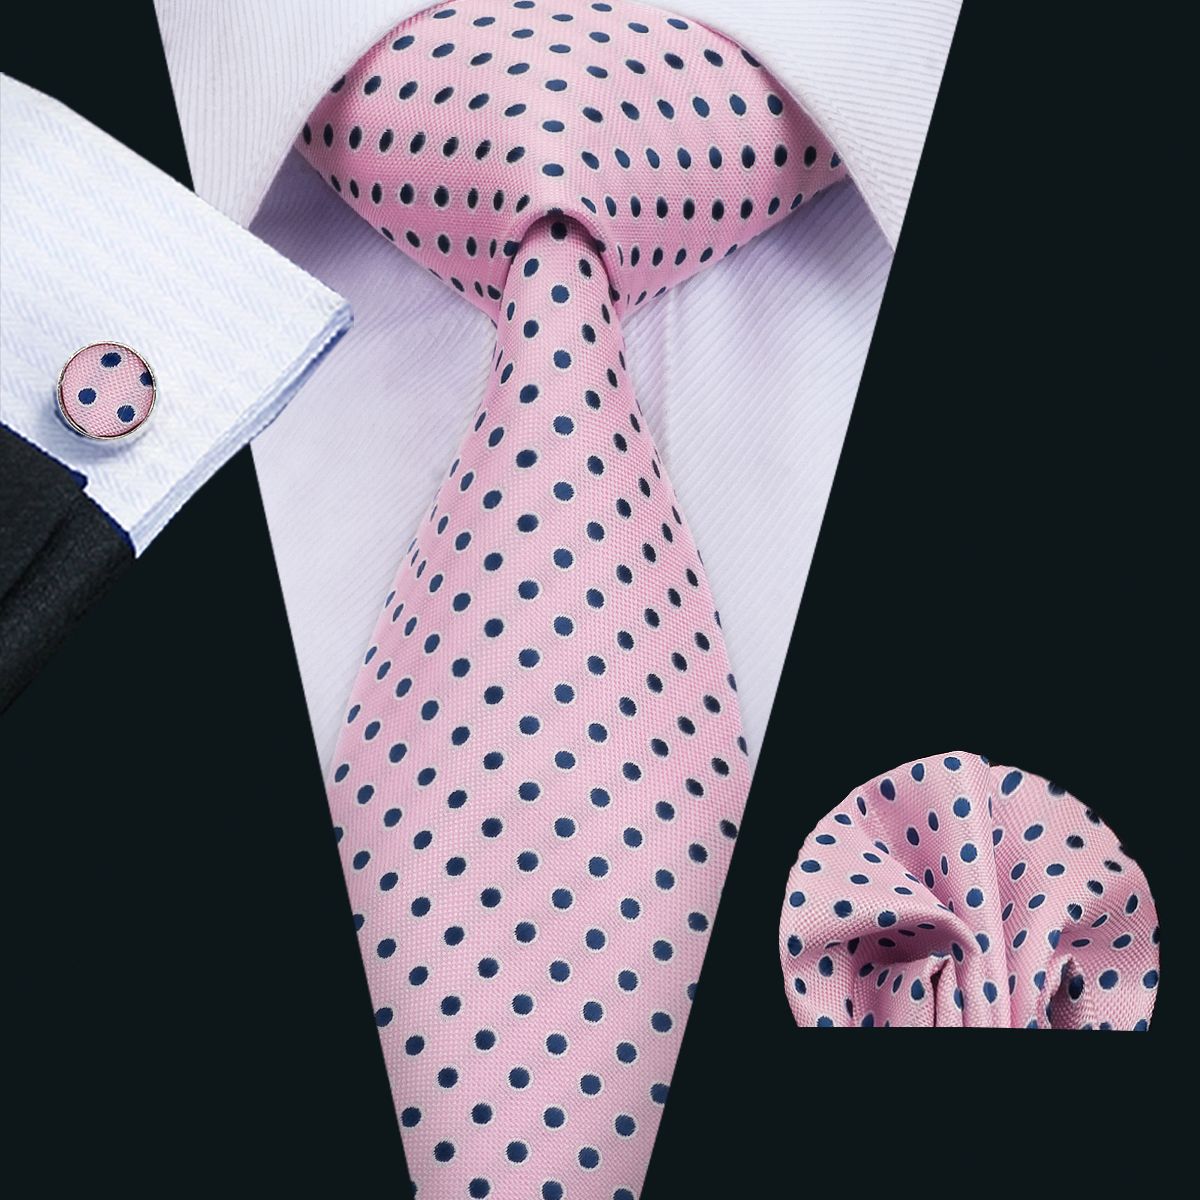 2019 Classic Silk Mens Neckties Pink Tie Sets Dot Ties For Men Tie ...